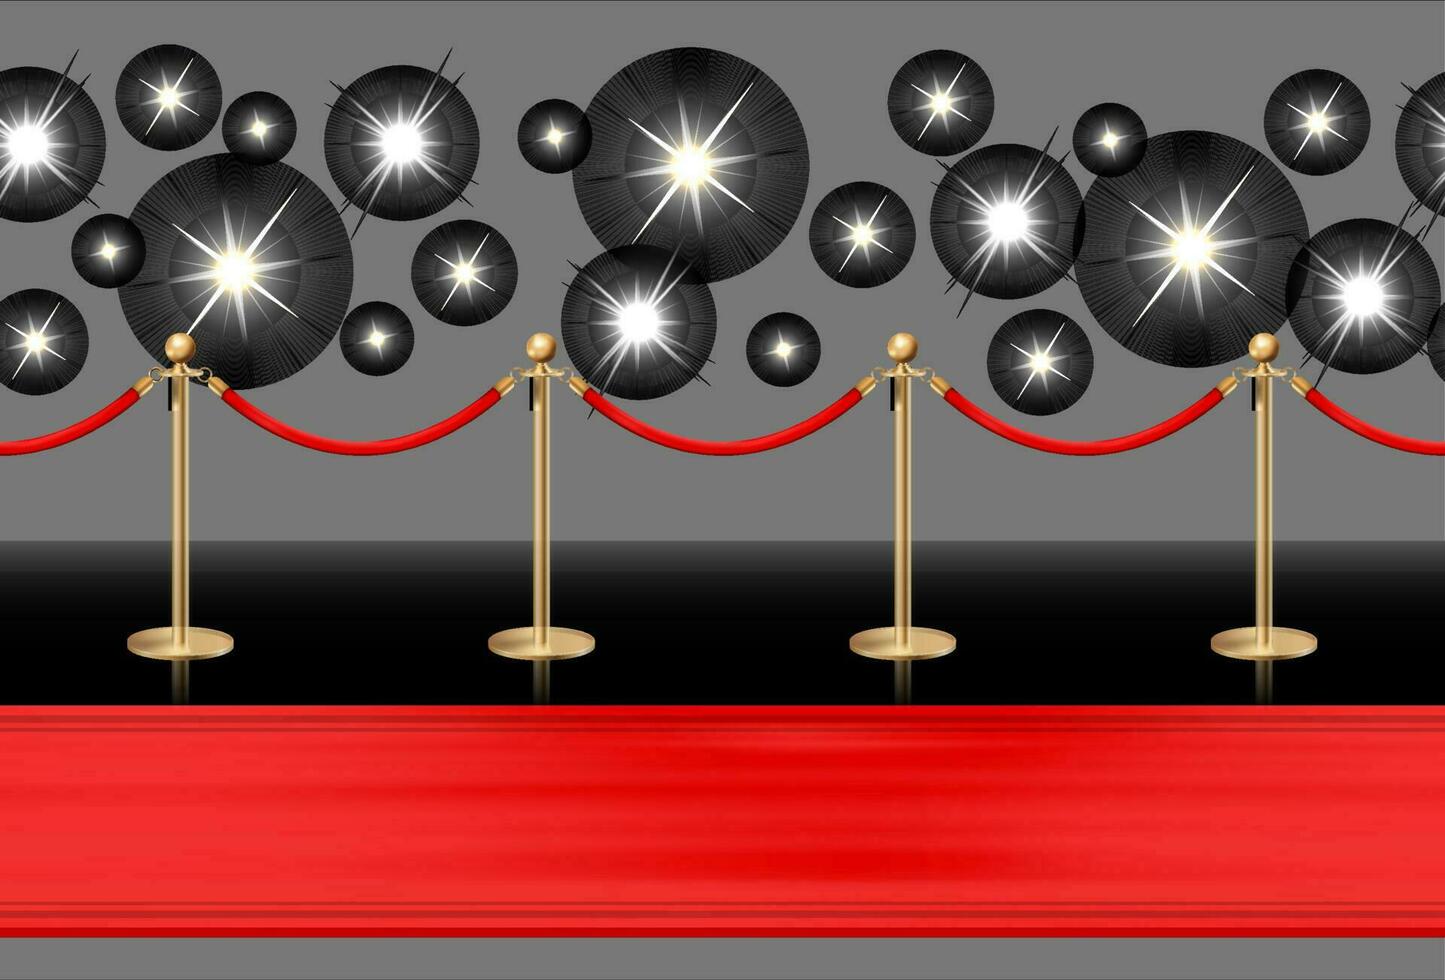 rot Teppich auf das Fußboden und golden Barrieren mit funkelnd Scheinwerfer. realistisch isoliert Zaun mit Seil auf schwarz Hintergrund. Vektor Illustration.